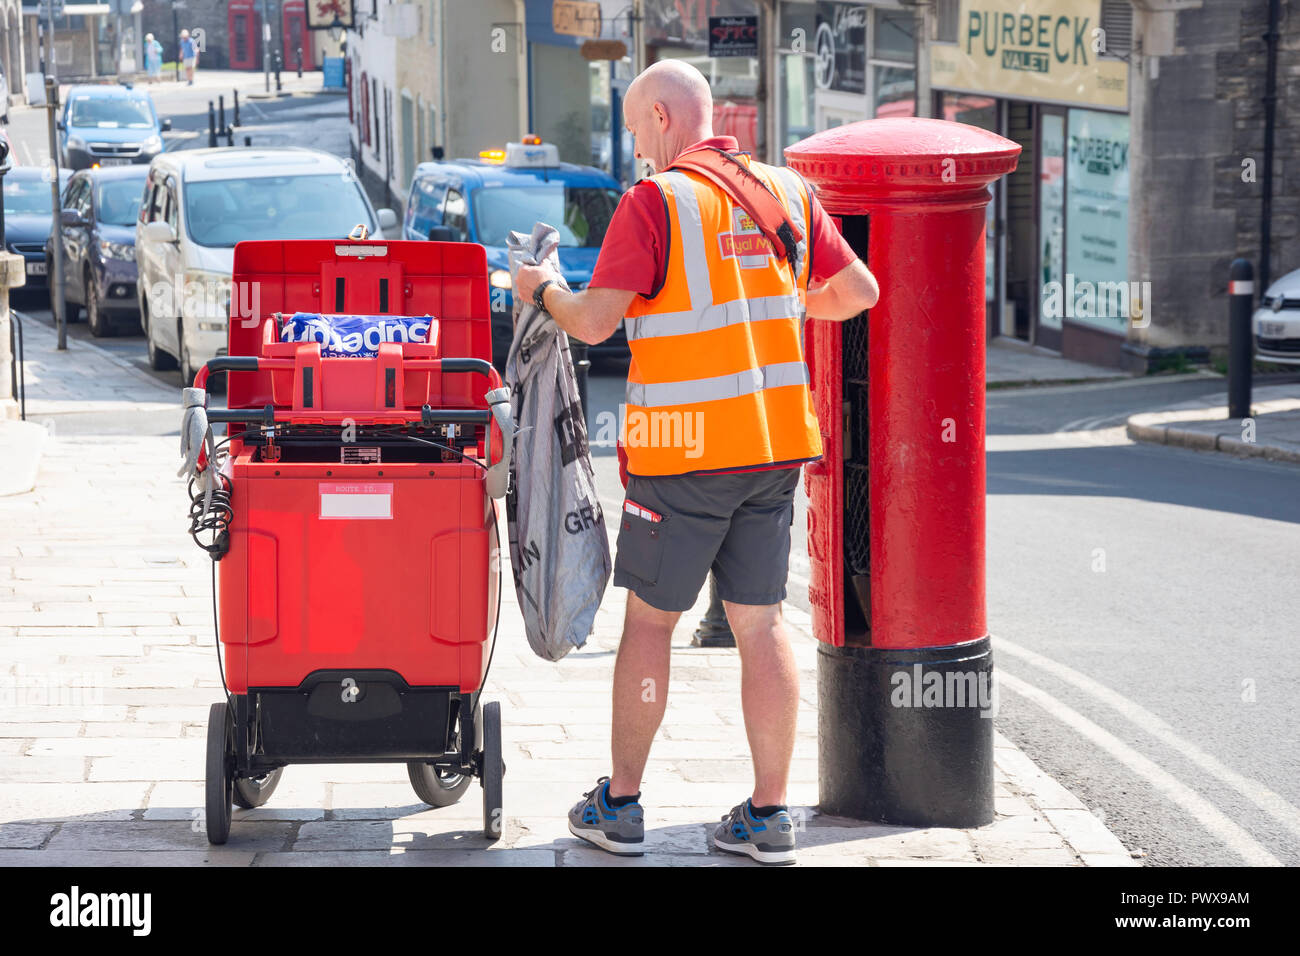 Royal Mail postman vider une boîte postale, High Street, Swanage, à l'île de Purbeck, Dorset, Angleterre, Royaume-Uni Banque D'Images